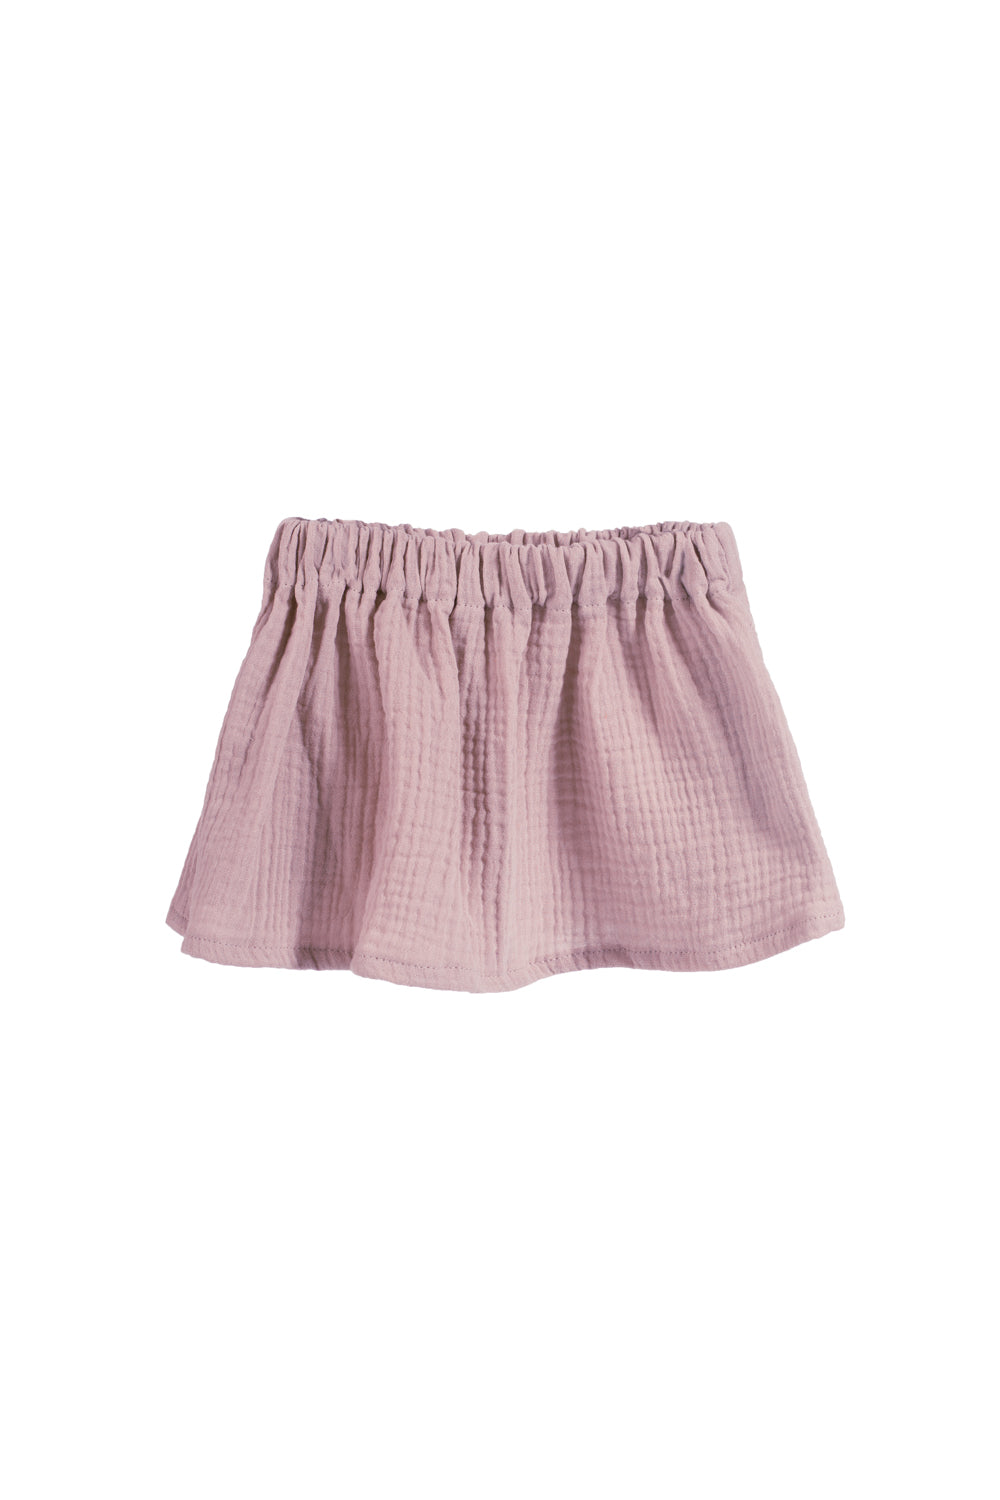 Field | lavender skirt